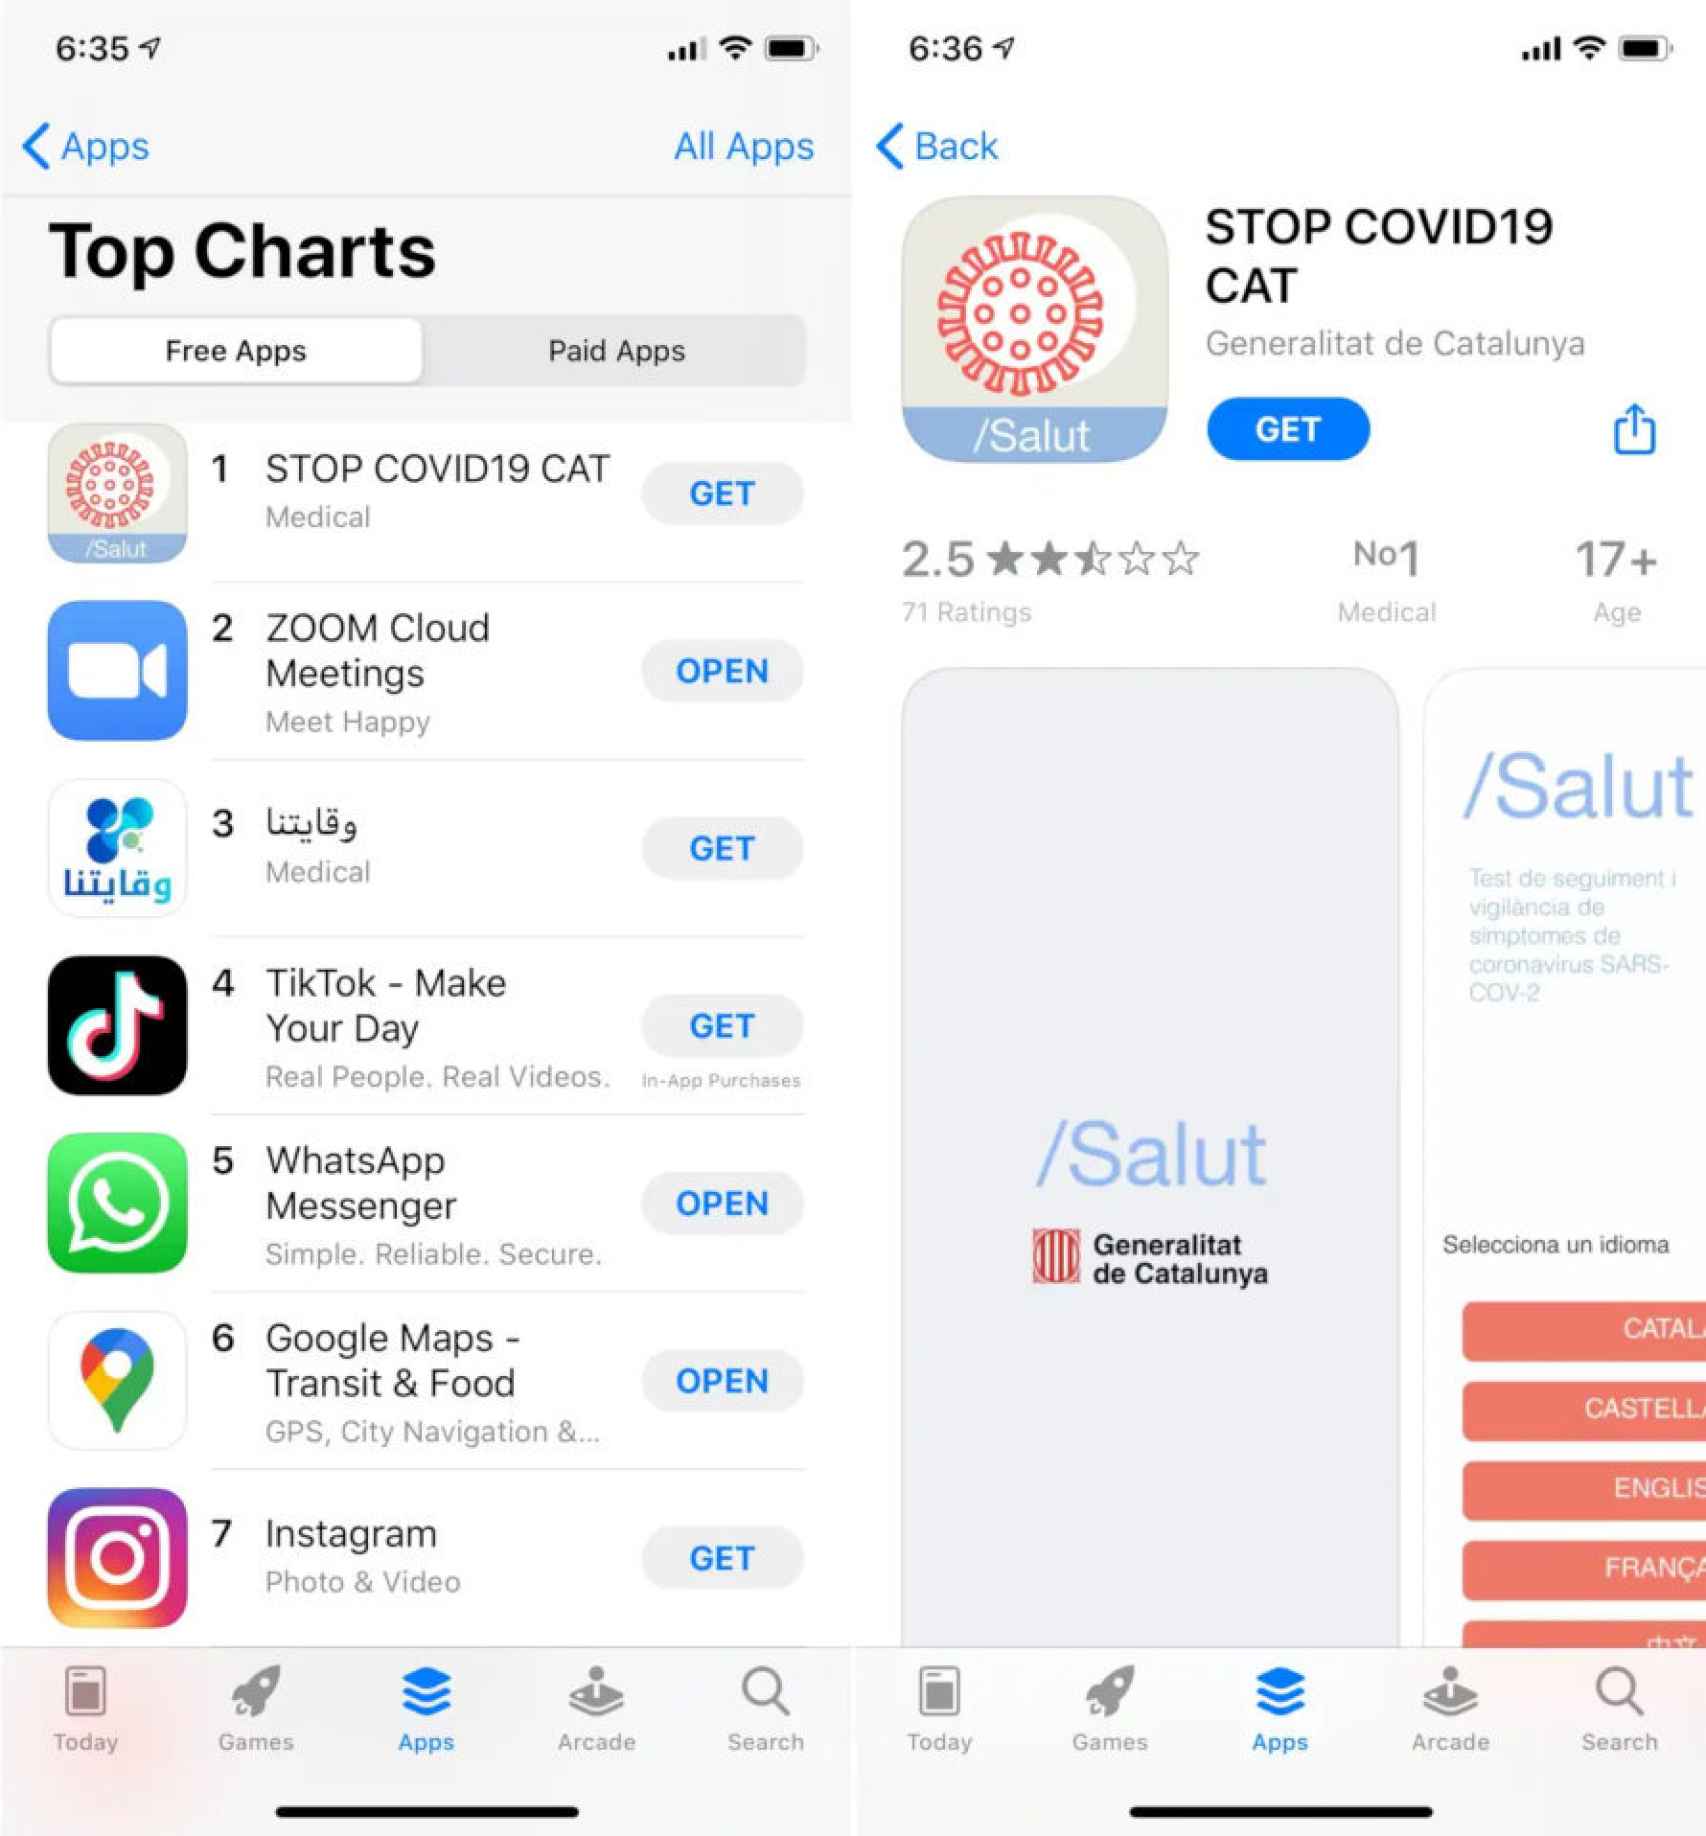 La app catalana contra el COVID-19 se ha convertido en la más descargada en Francia